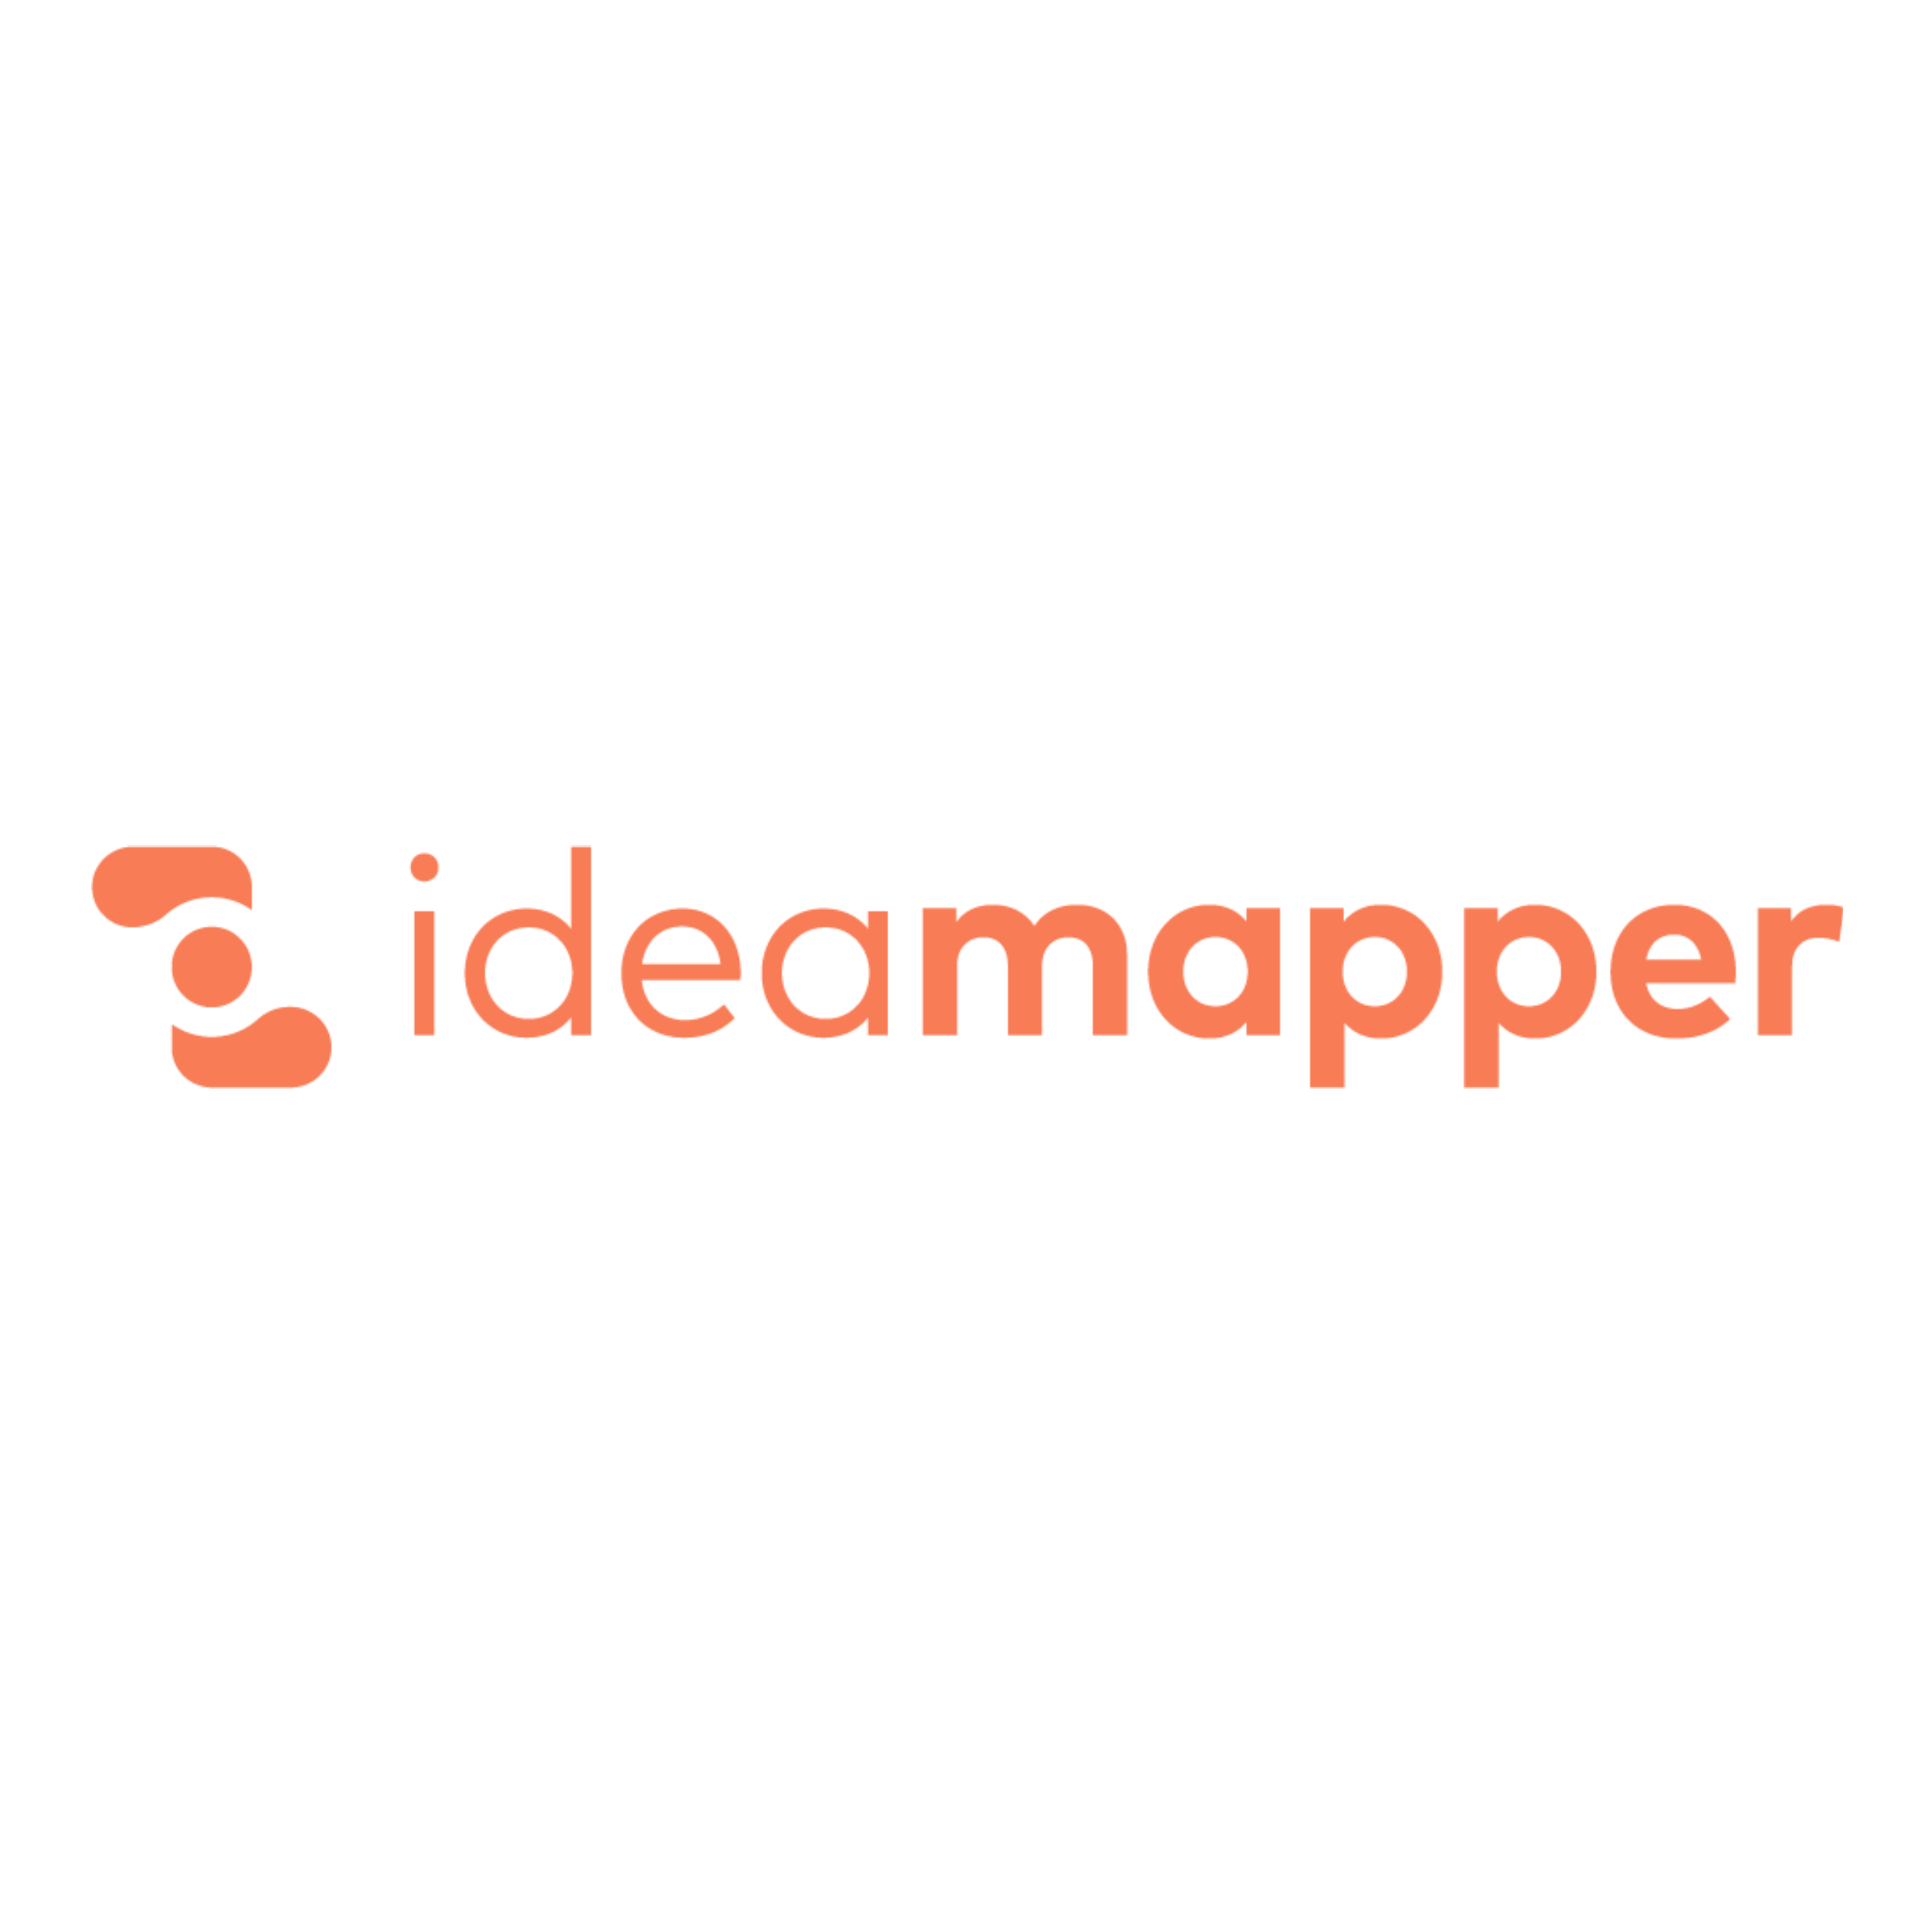 Ideamapper logo